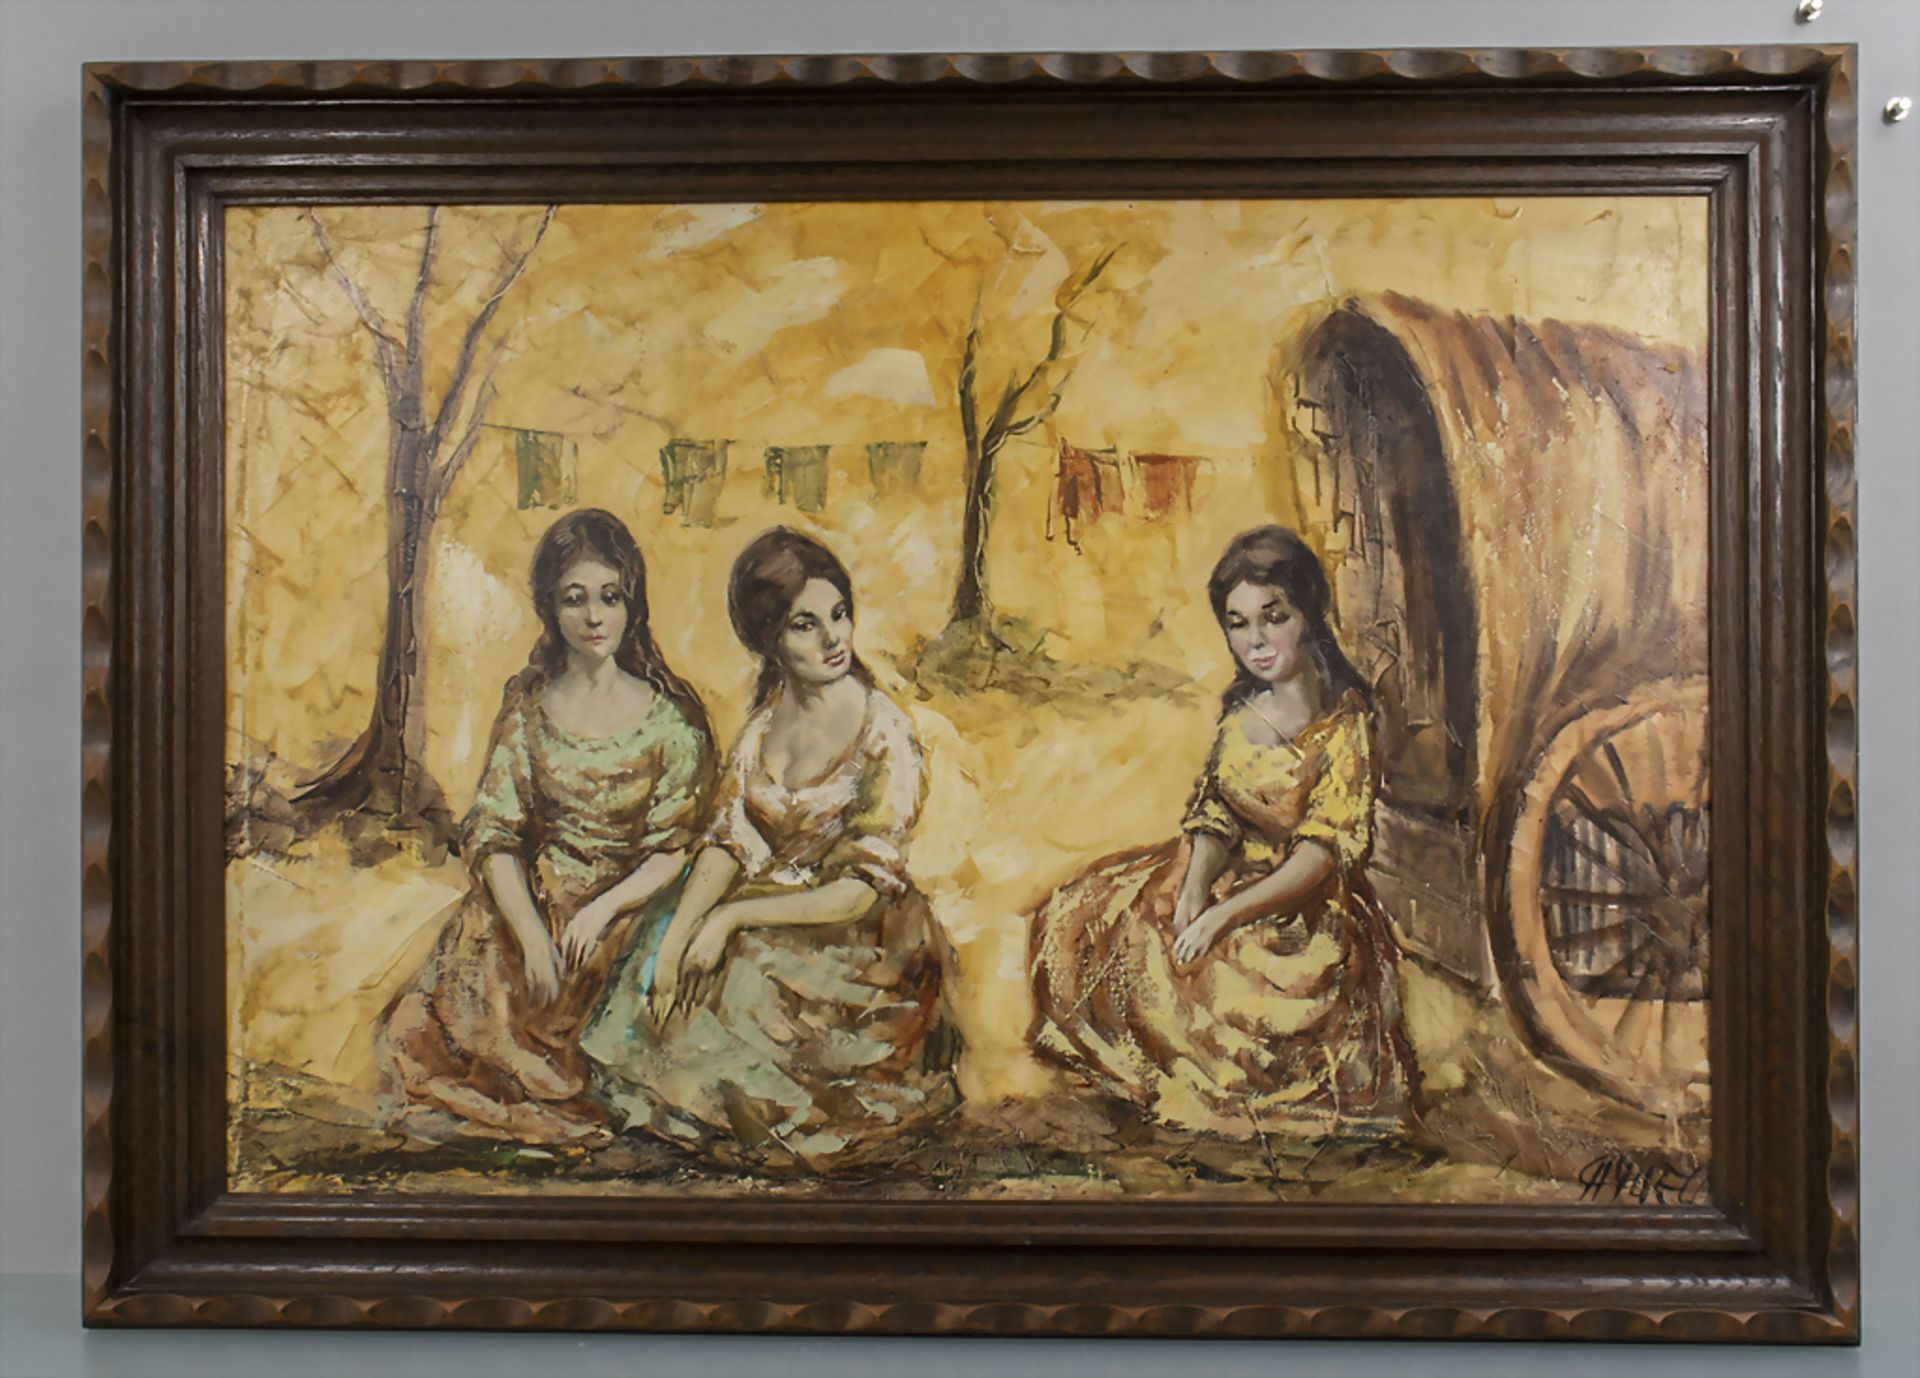 Unbekannter Signaturist des 20. Jh., 'Drei Zigeunerinnen' / 'Three gypsy women' - Bild 2 aus 4